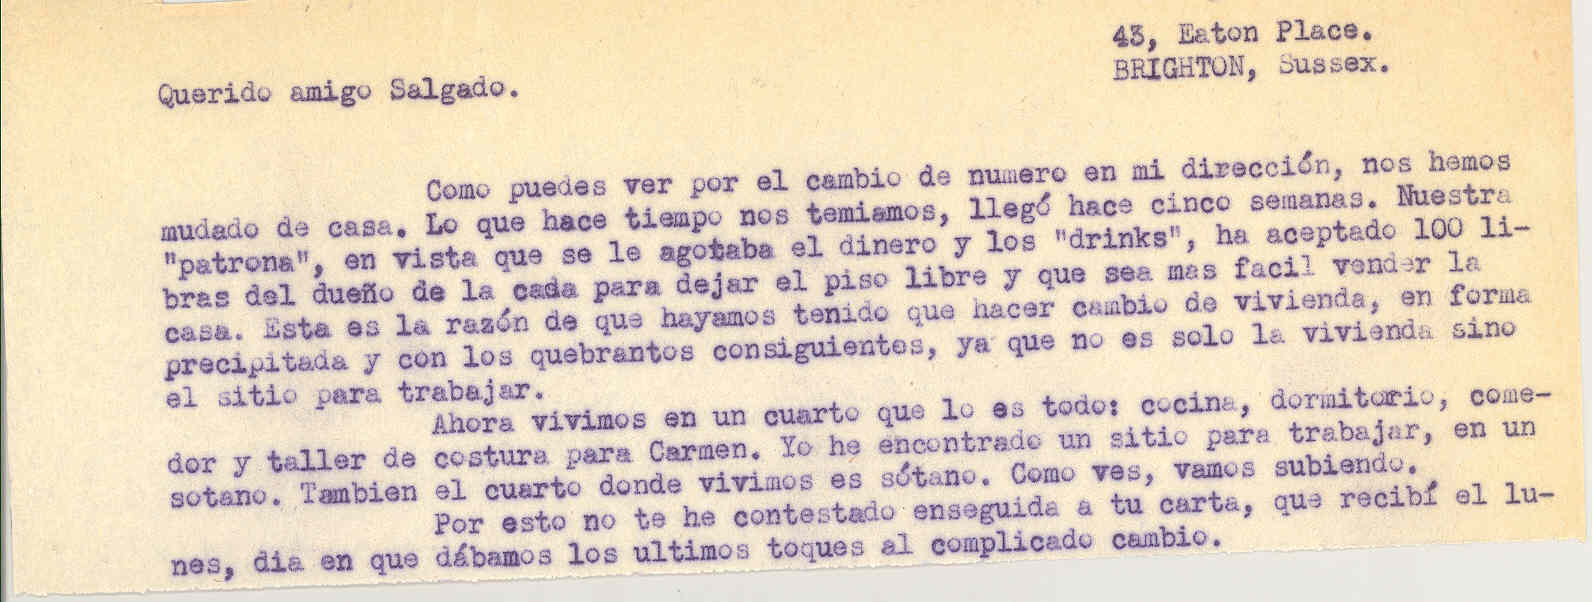 Carta a Manuel Salgado sobre su cambio de dirección postal y los motivos que los han conducido a ello